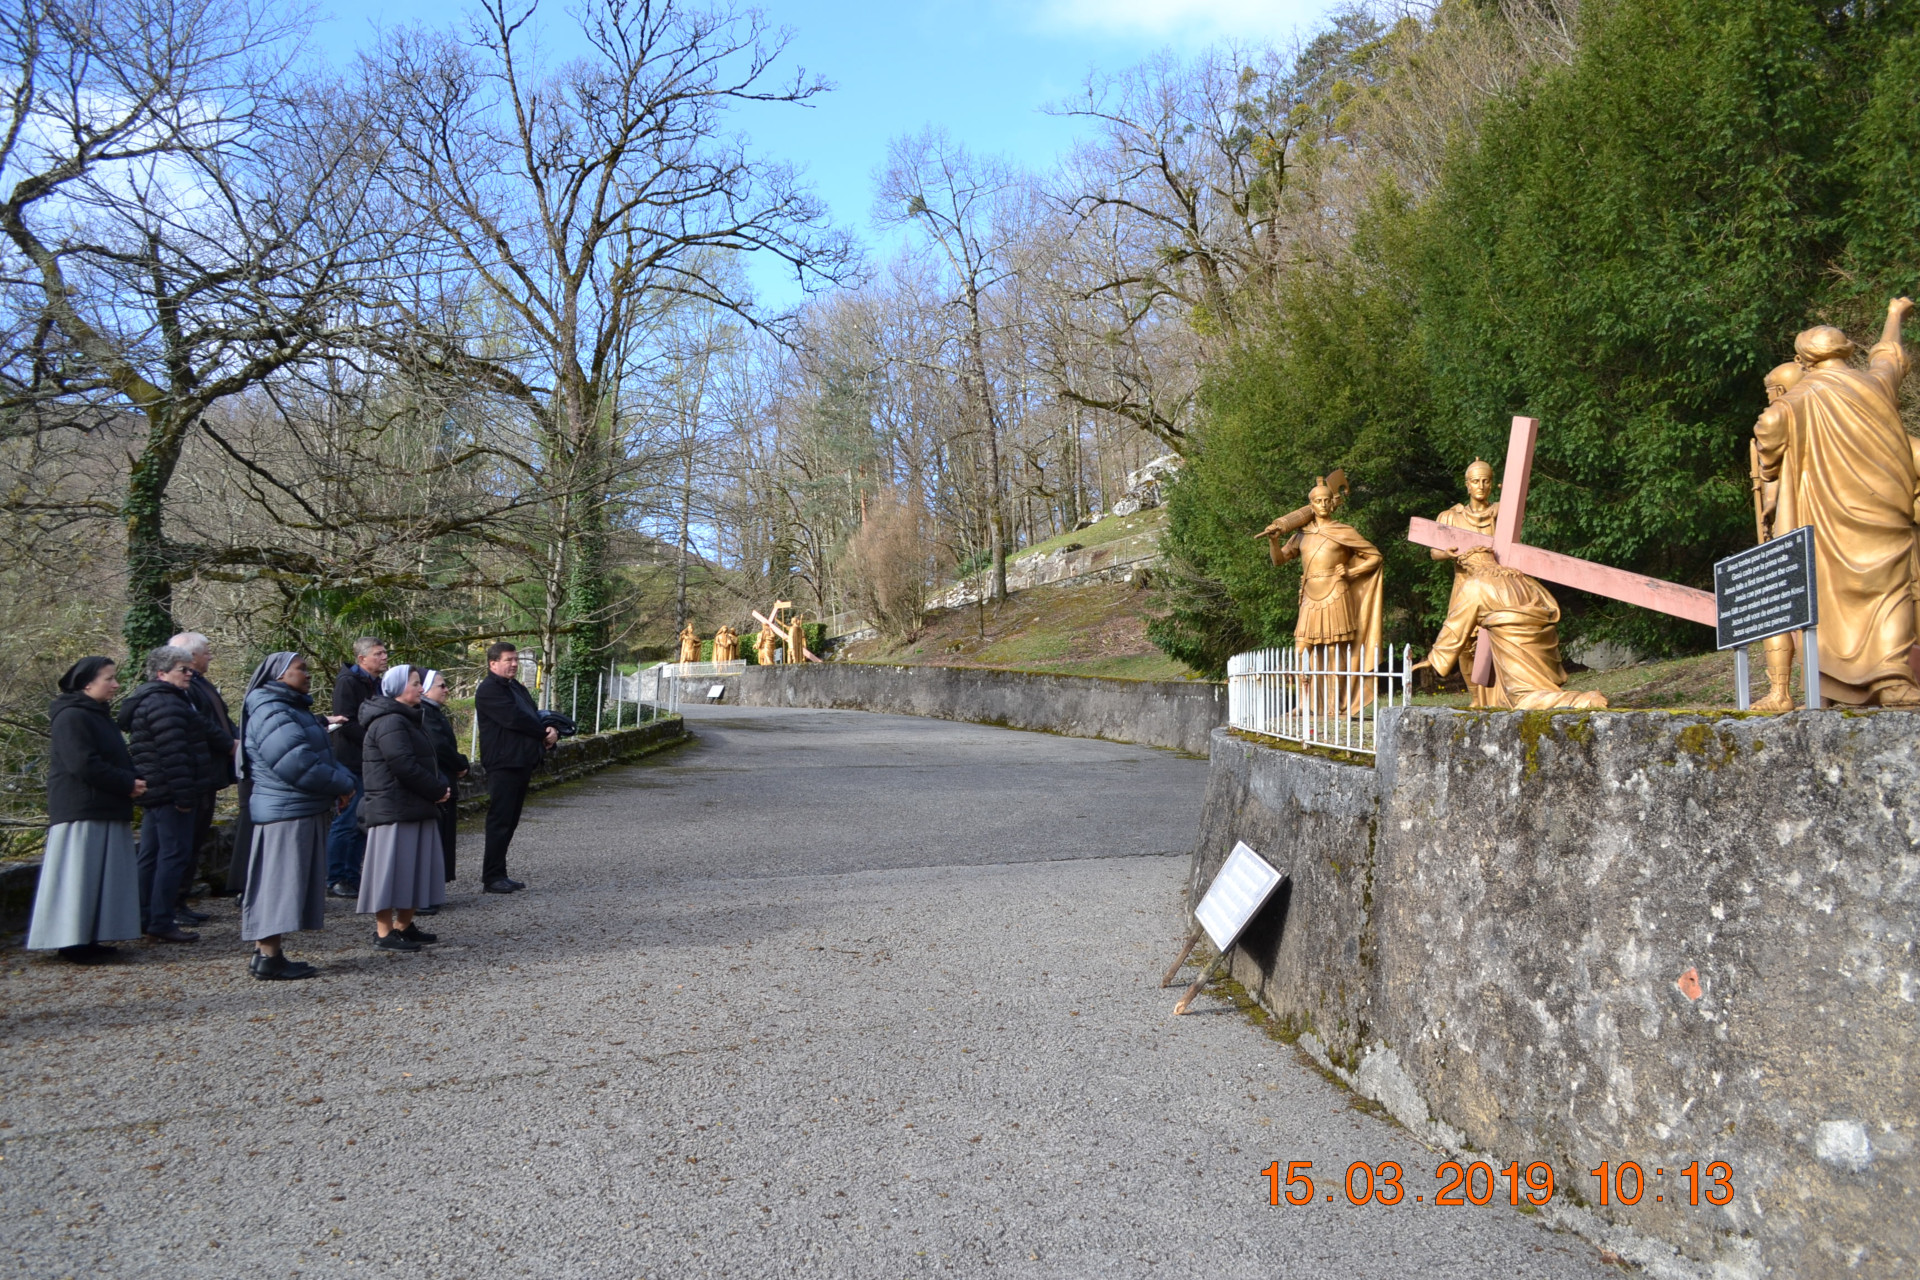 Parafialny ślad w Lourdes